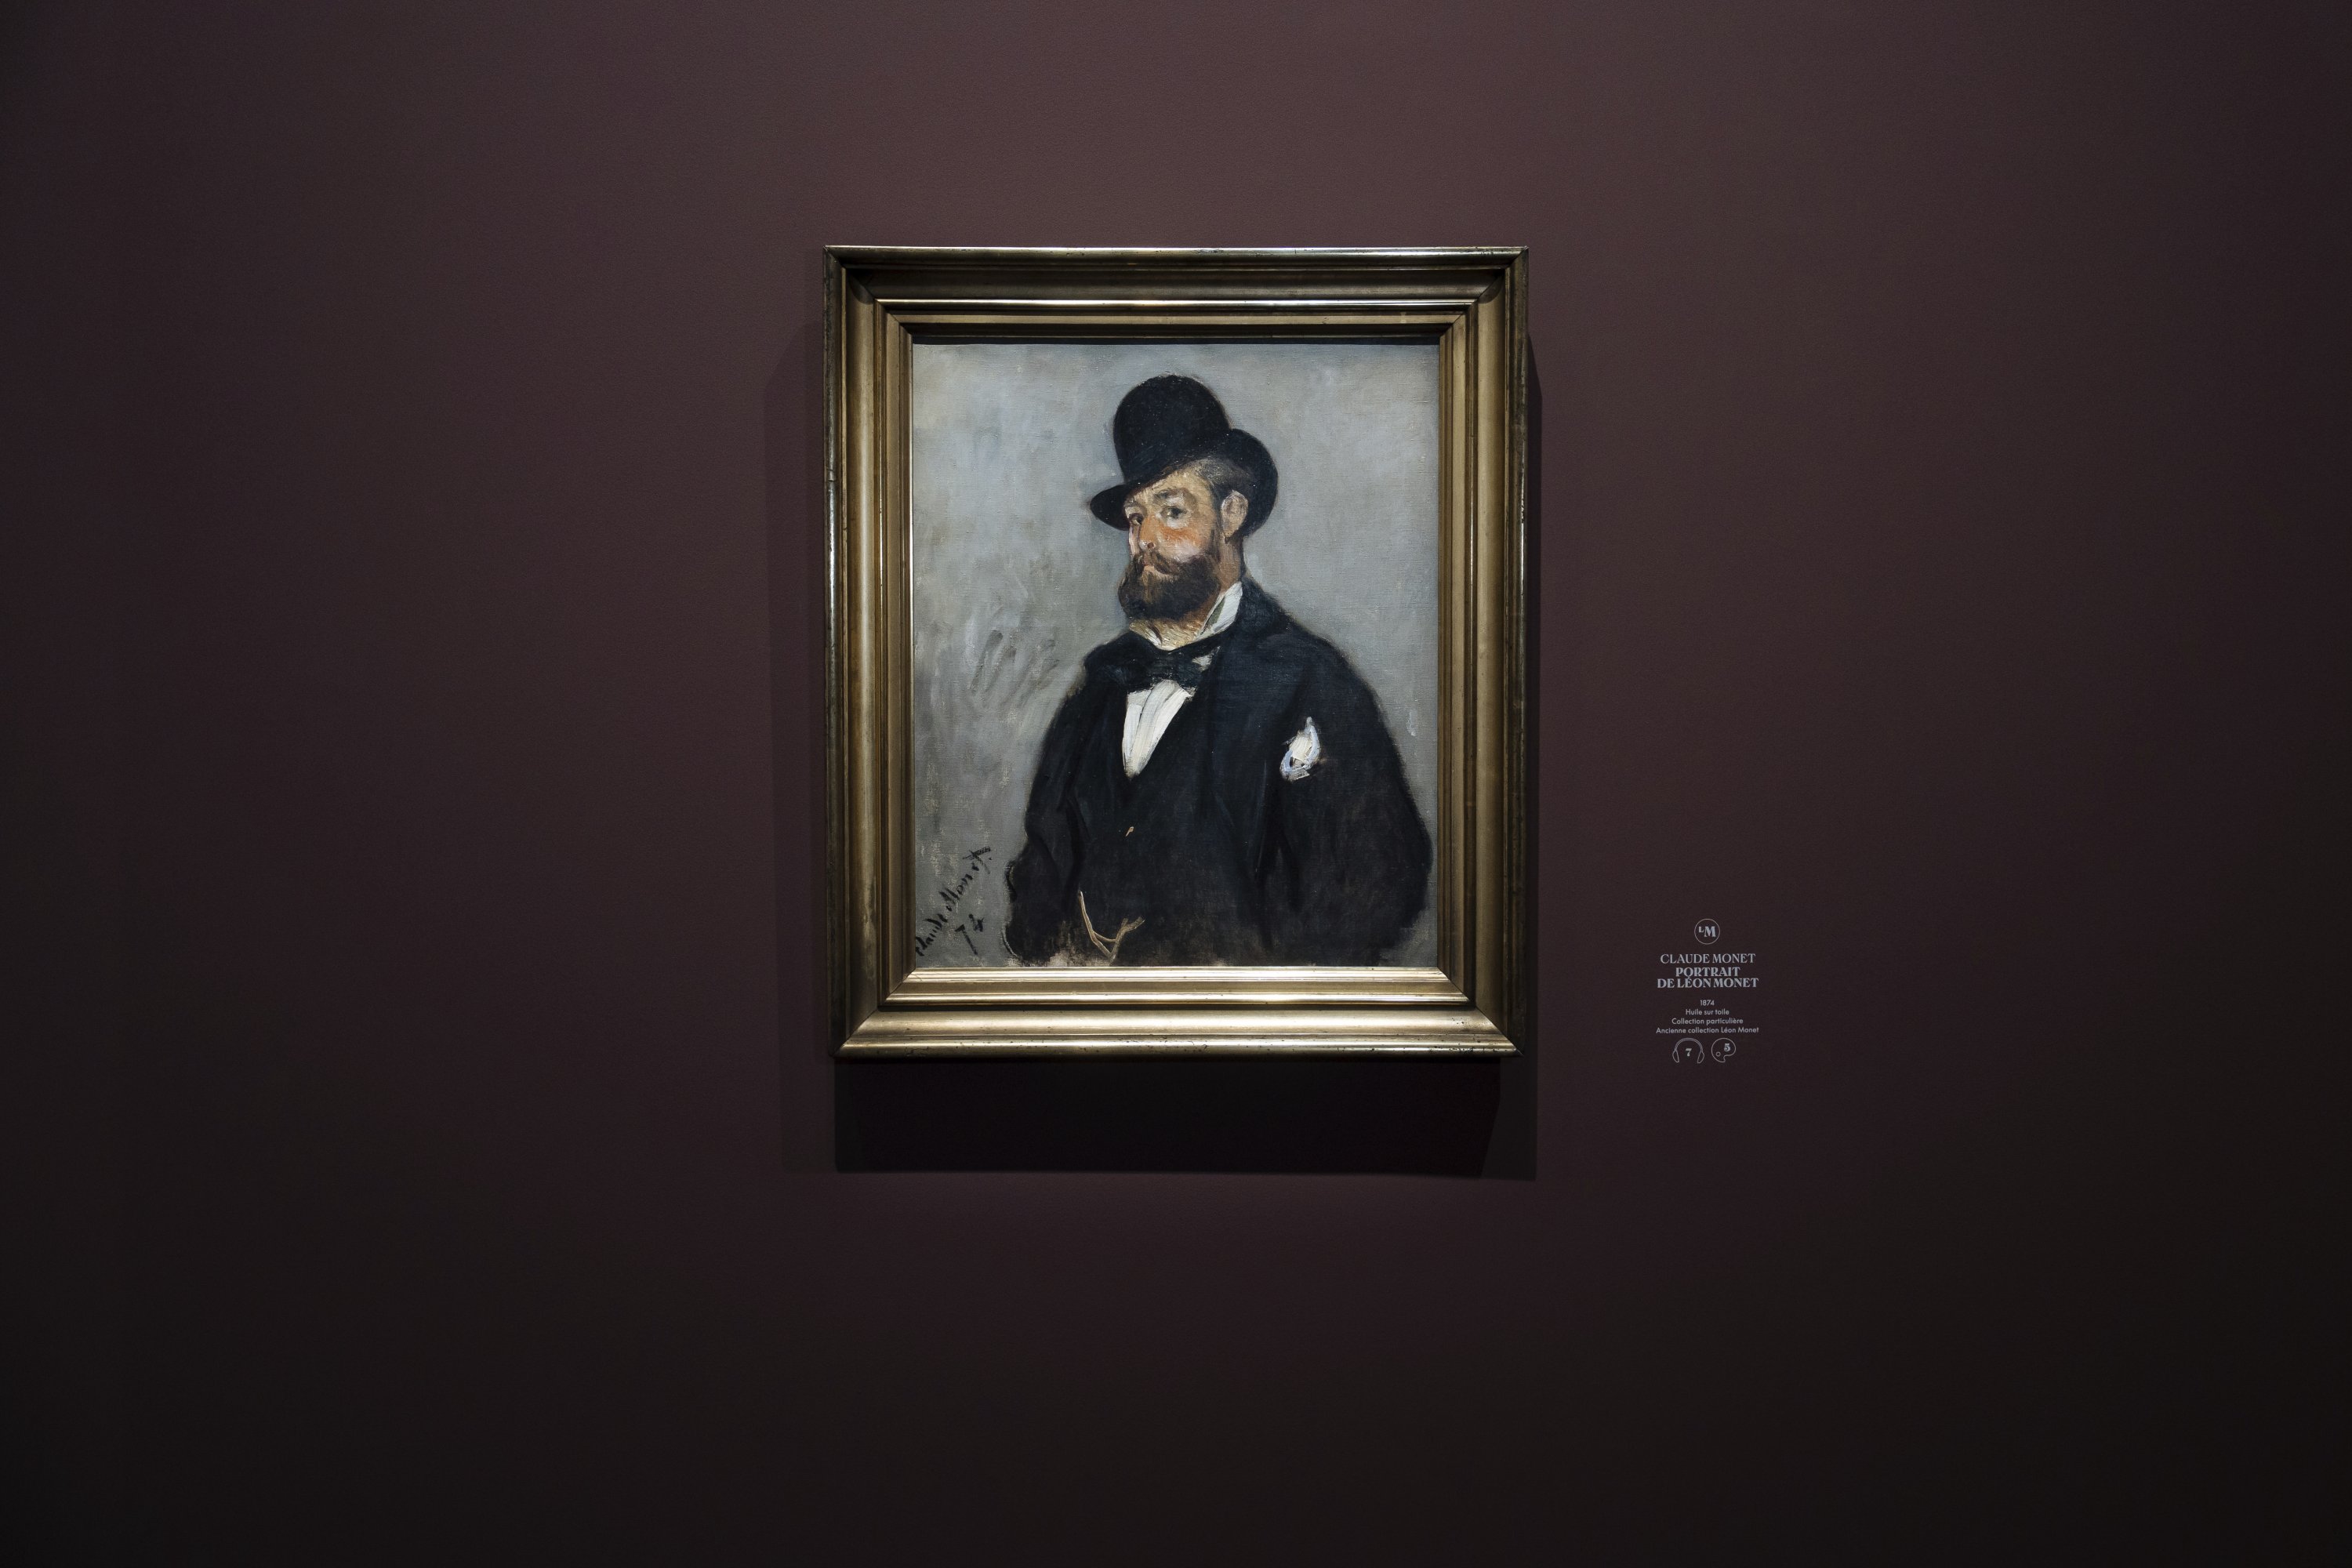 Potret Leon Monet oleh saudaranya Claude Monet dipajang sebagai bagian dari pameran yang menyoroti peran yang sampai sekarang tidak diketahui yang dimainkan Leon dalam peran kehidupan dan seni saudaranya Claude, di Musée du Luxembourg, Paris, Prancis, 13 Maret 2023 .(Foto AP)